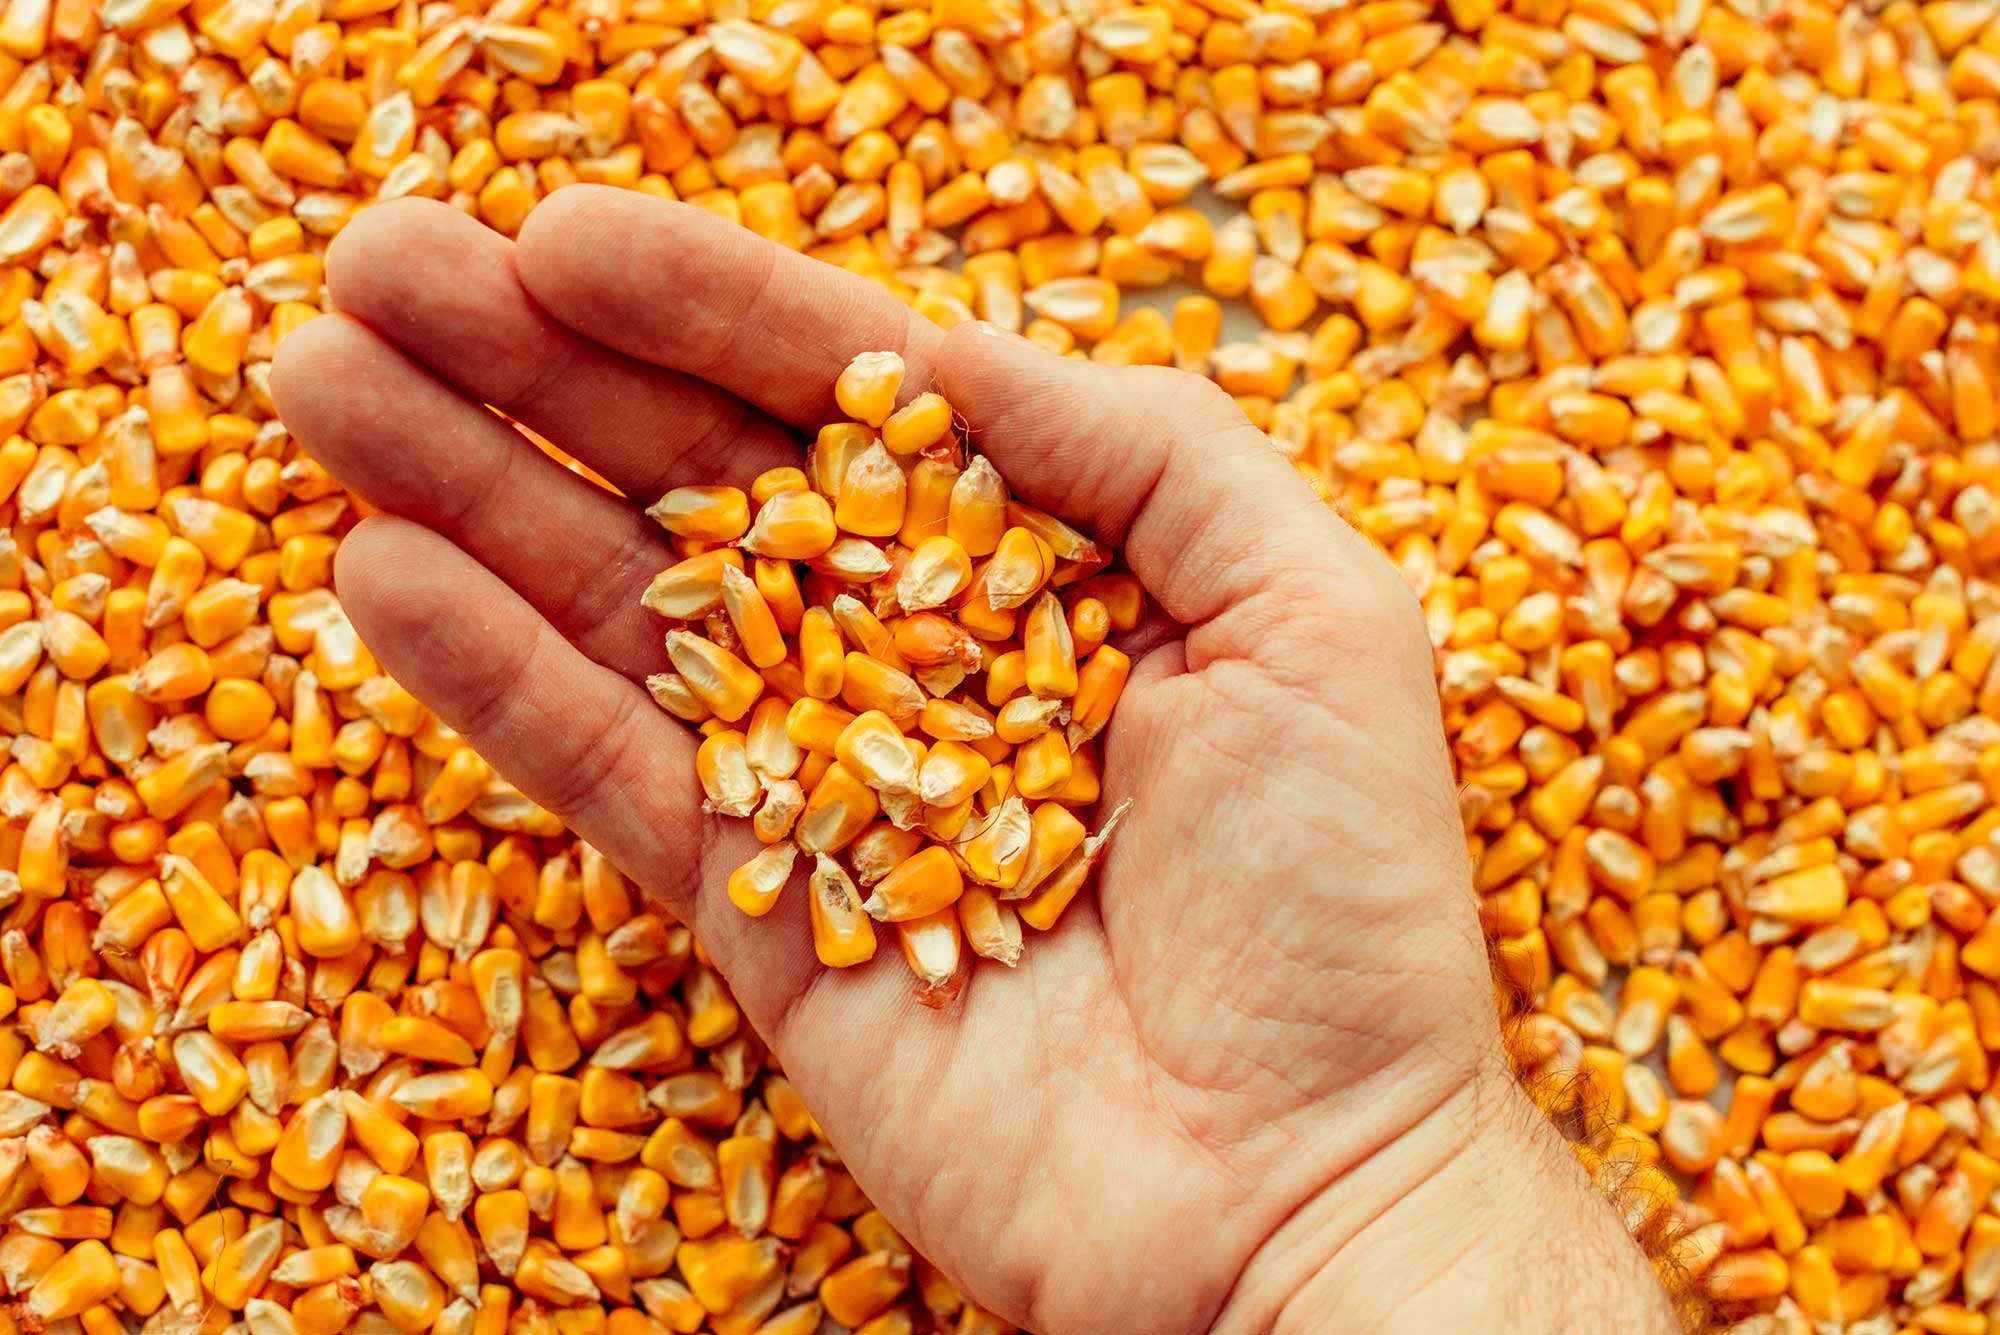 Урожай 2022 г.: кукуруза, пшеница, рапс, соя, подсолнечник, картофель. Комбикорм - в наличии и под заказ